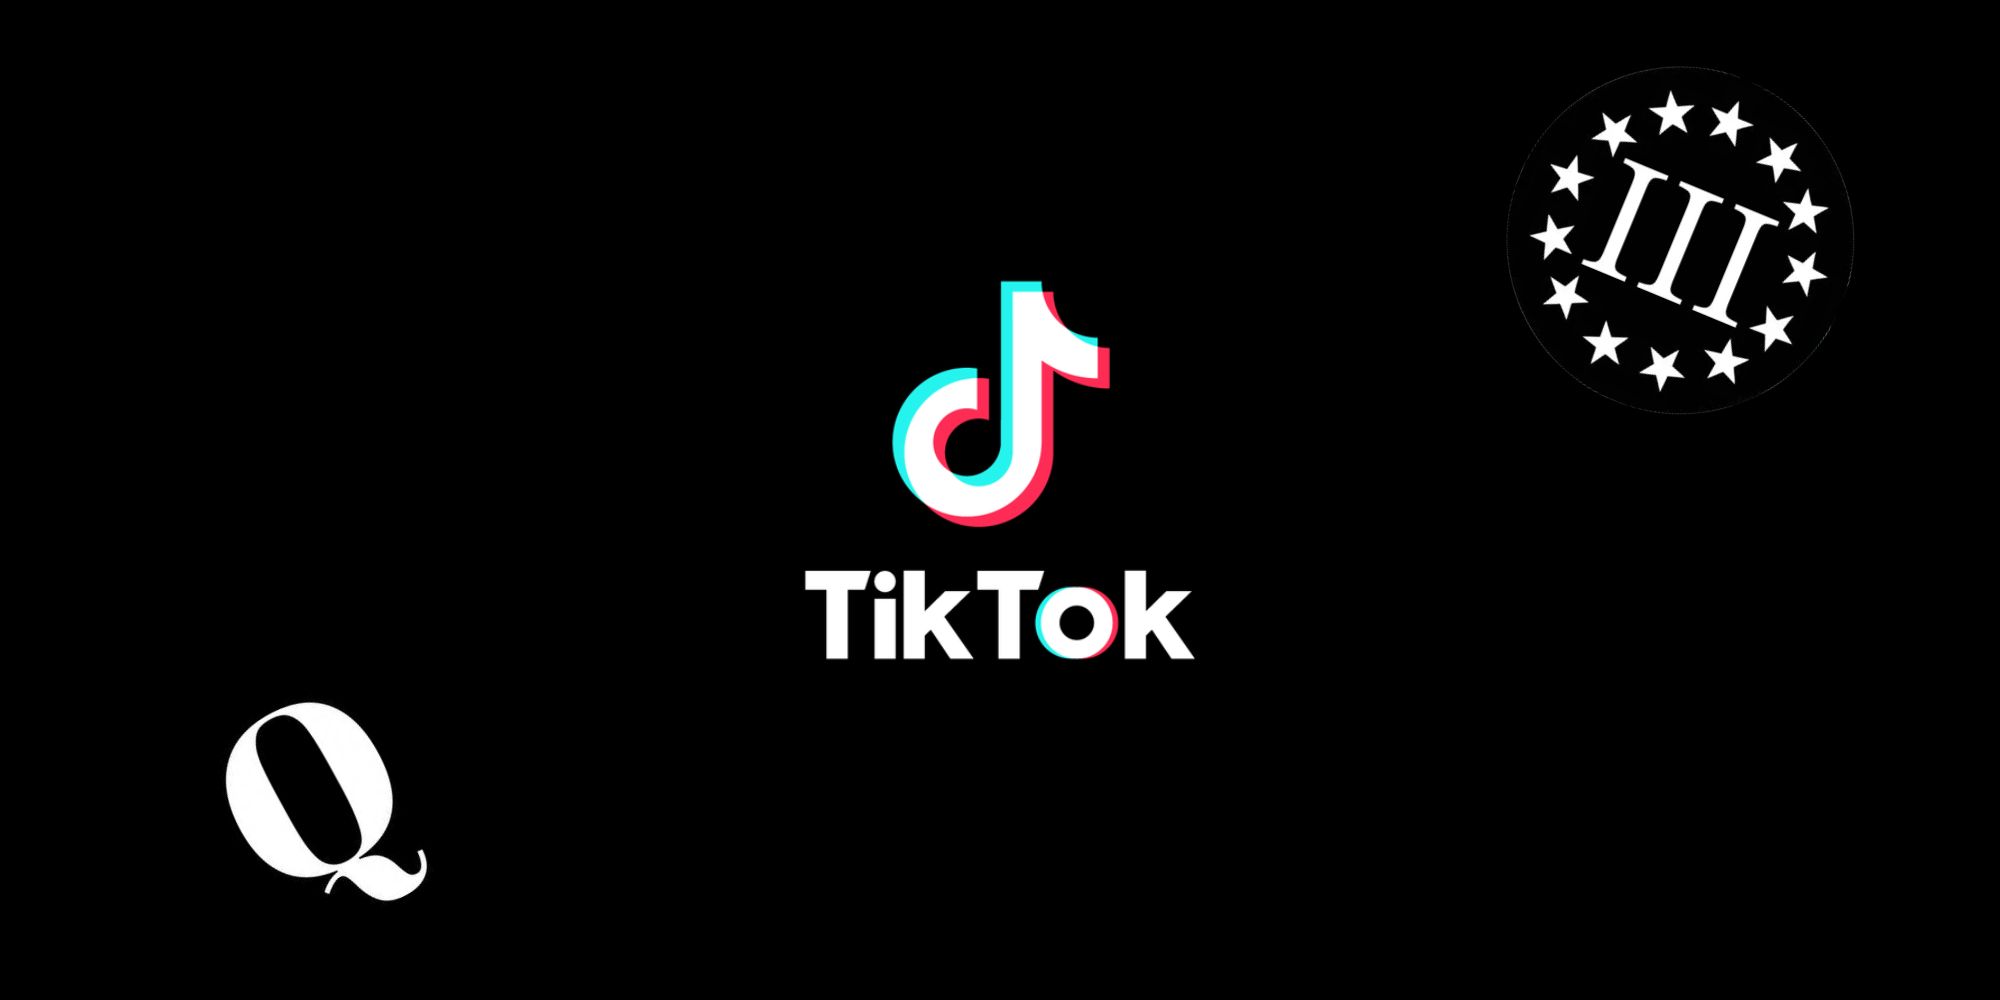 TikTok logo next to icons for extremist groups